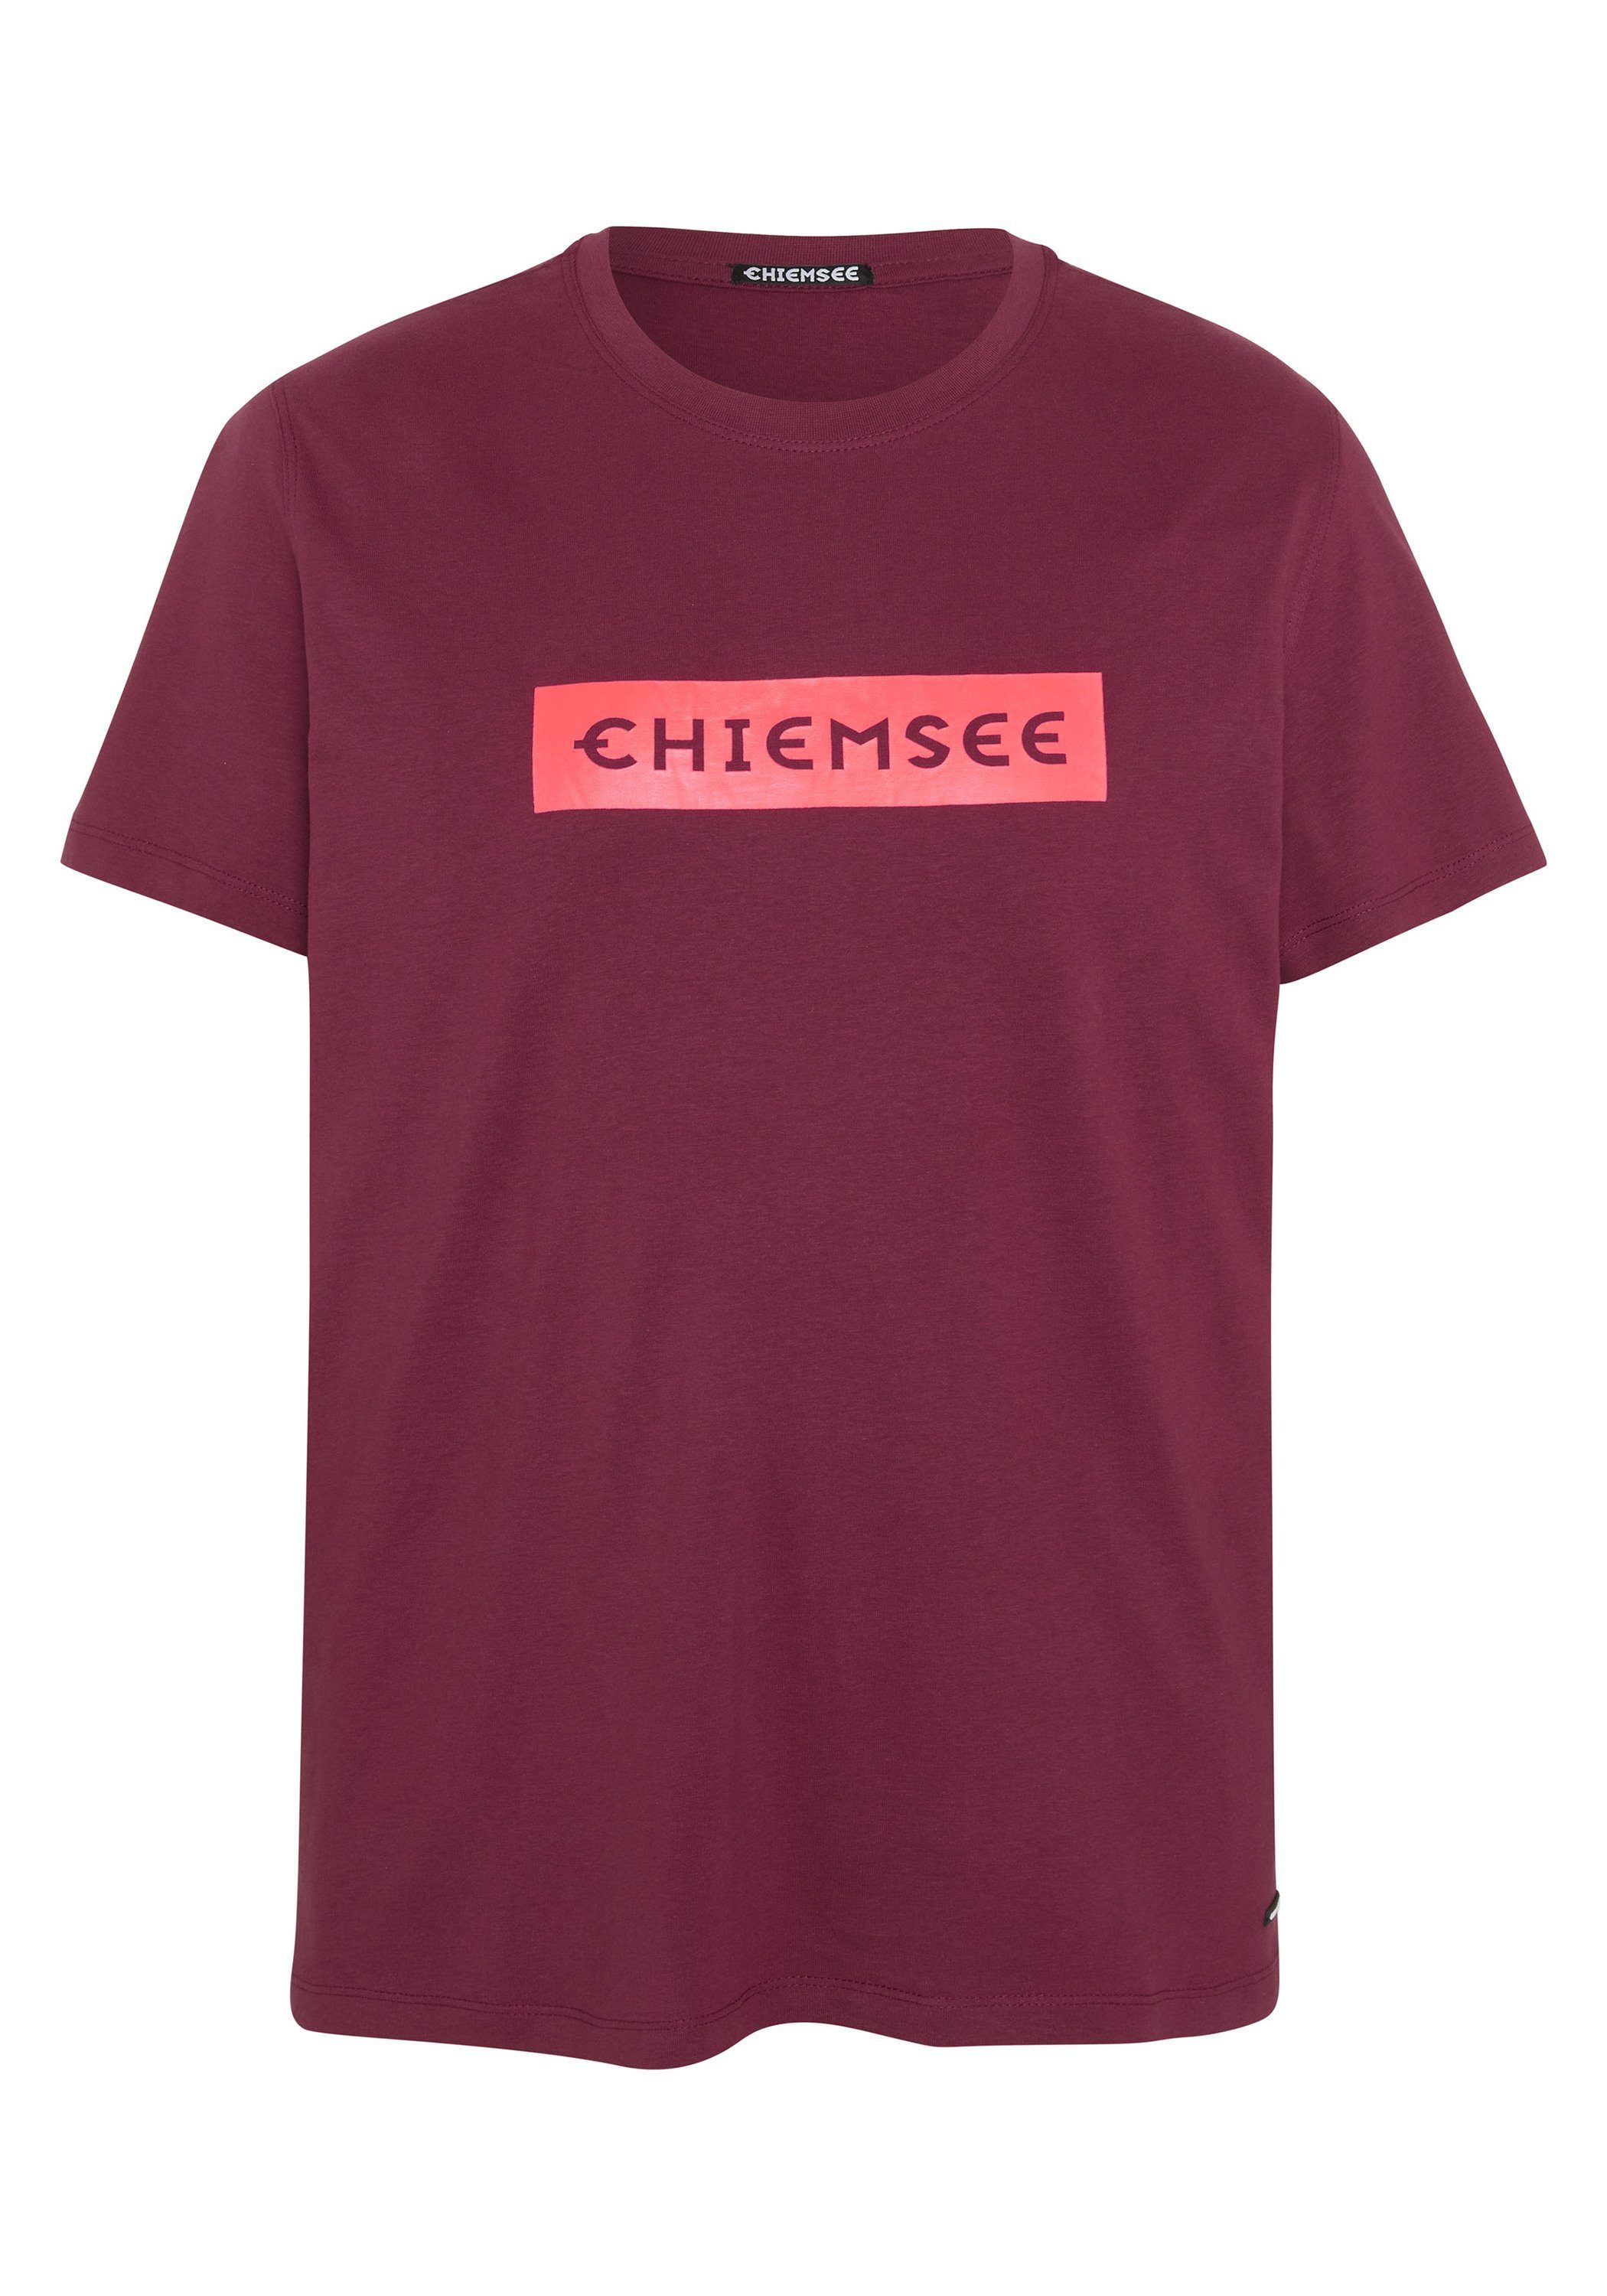 19-1934 Tibetan Print-Shirt Chiemsee 1 Red Label-Schriftzug mit T-Shirt